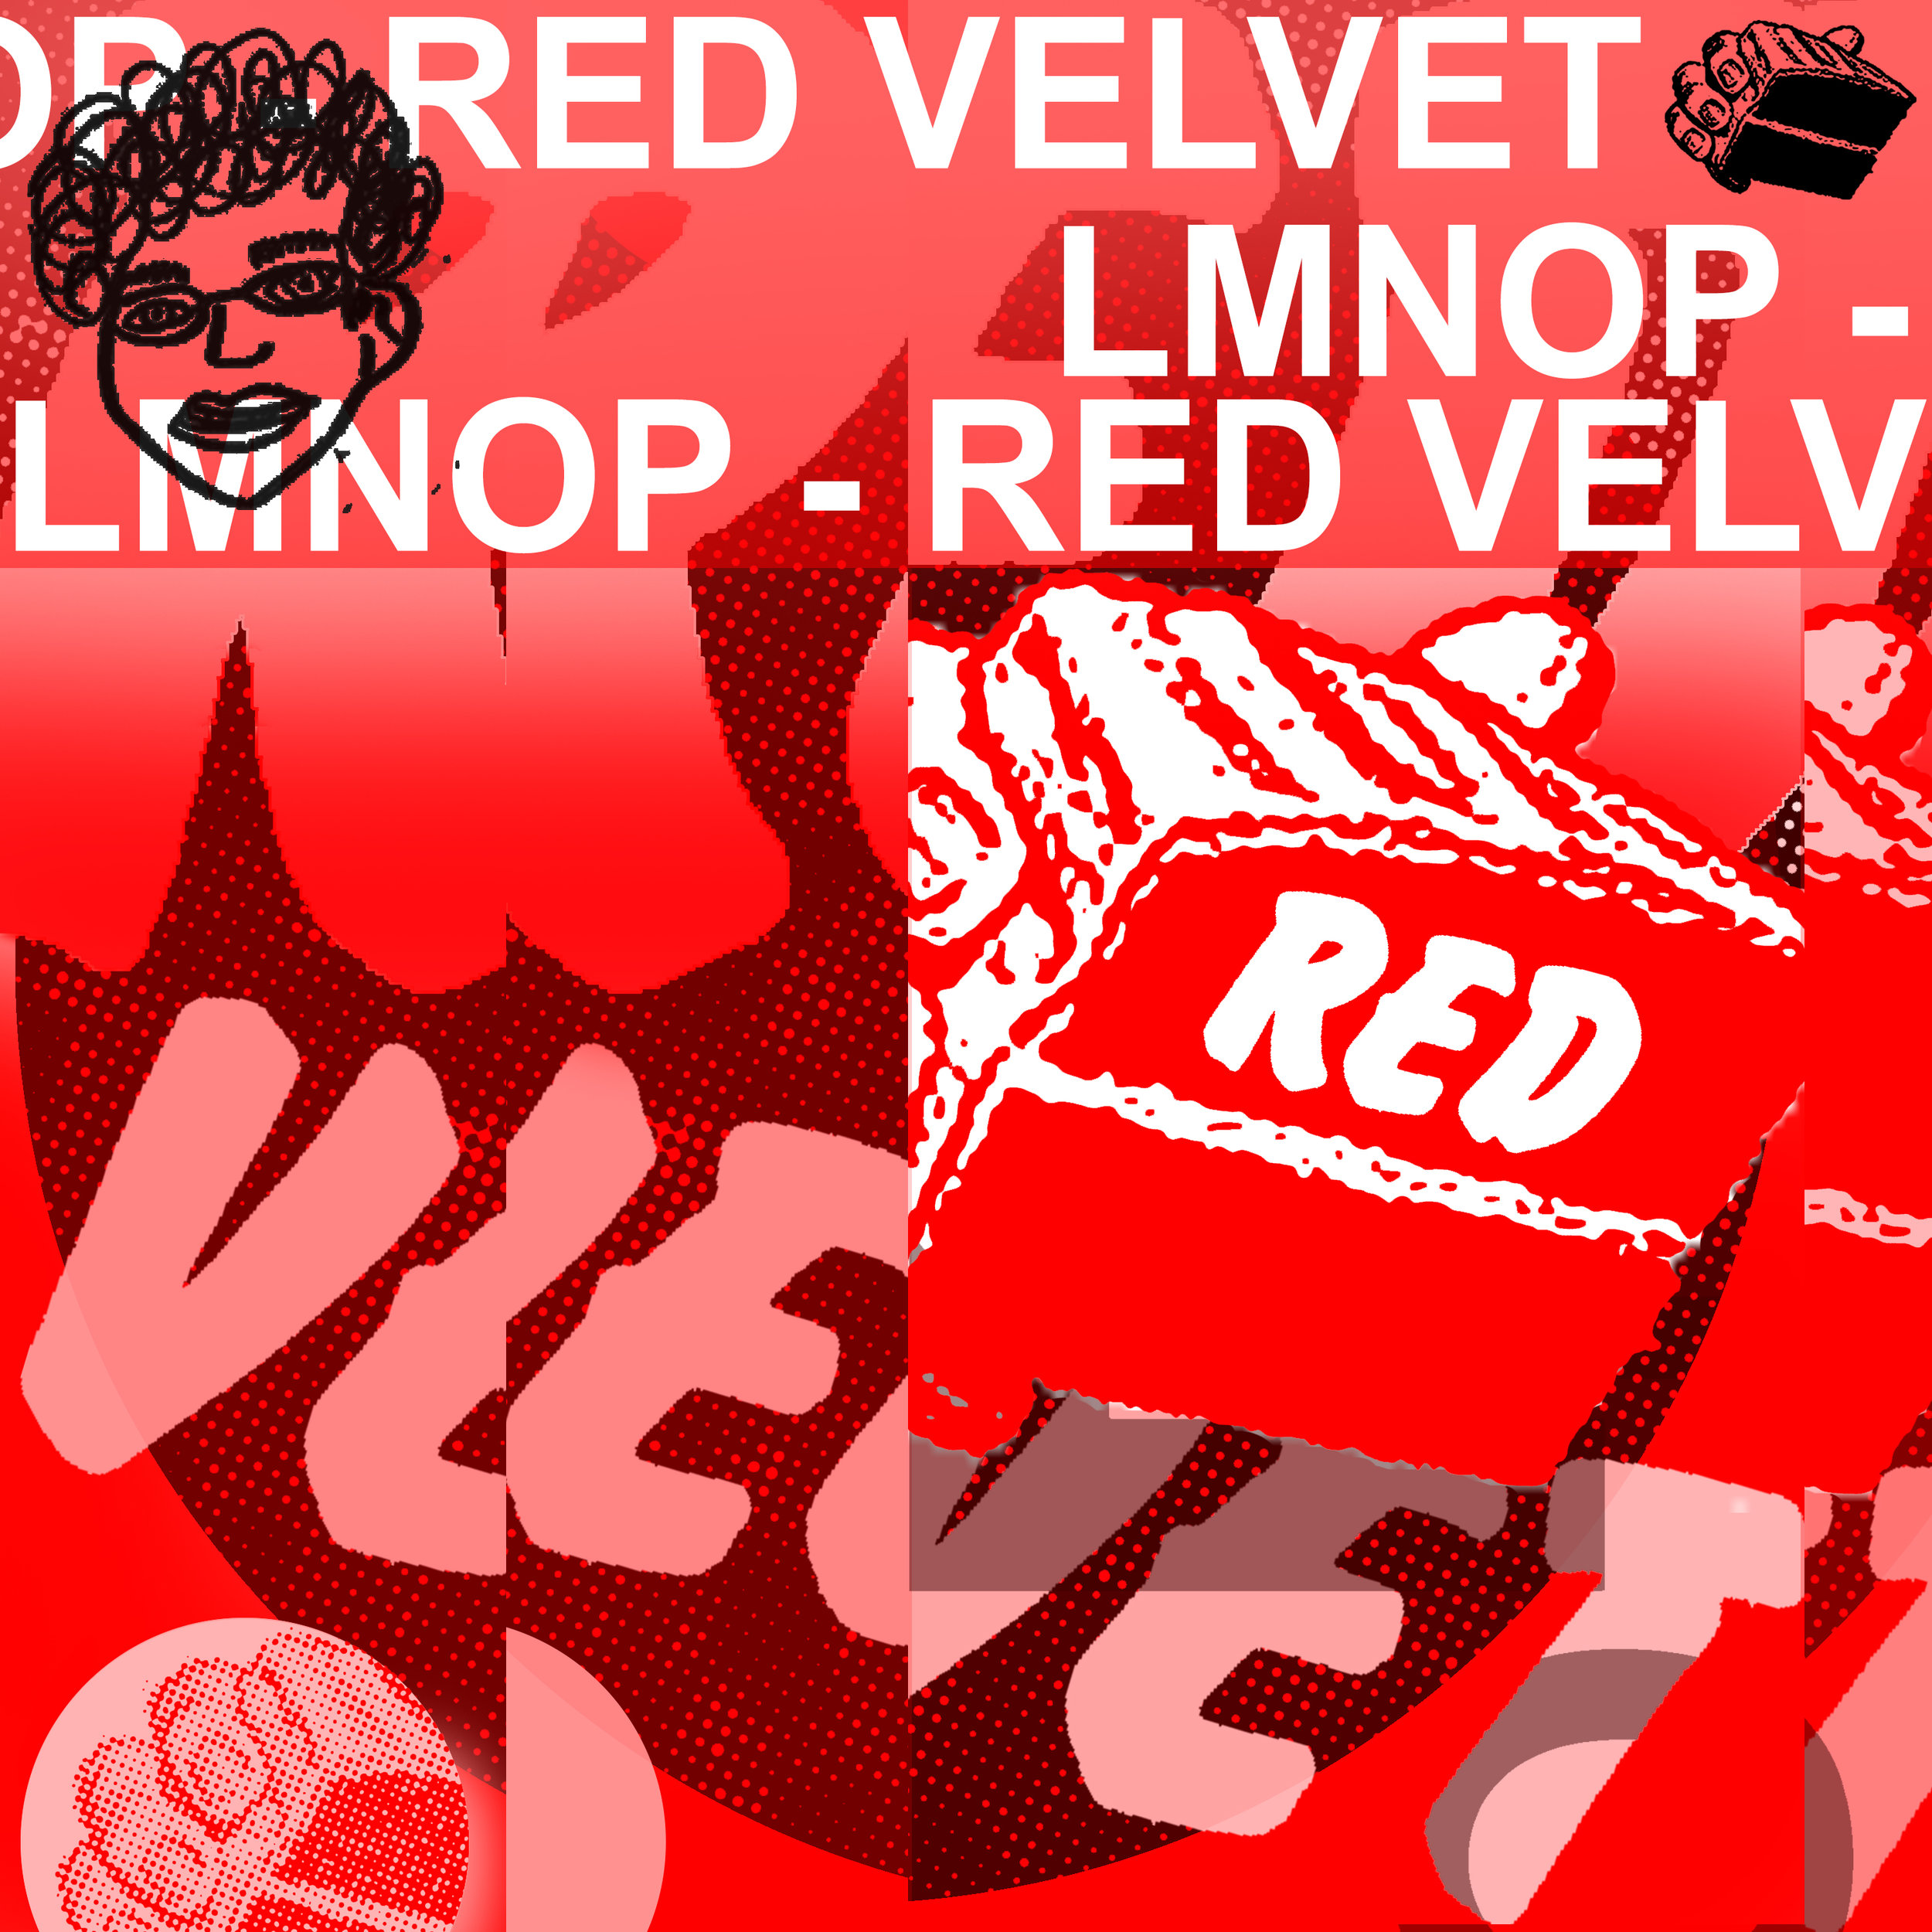 RED VELVET